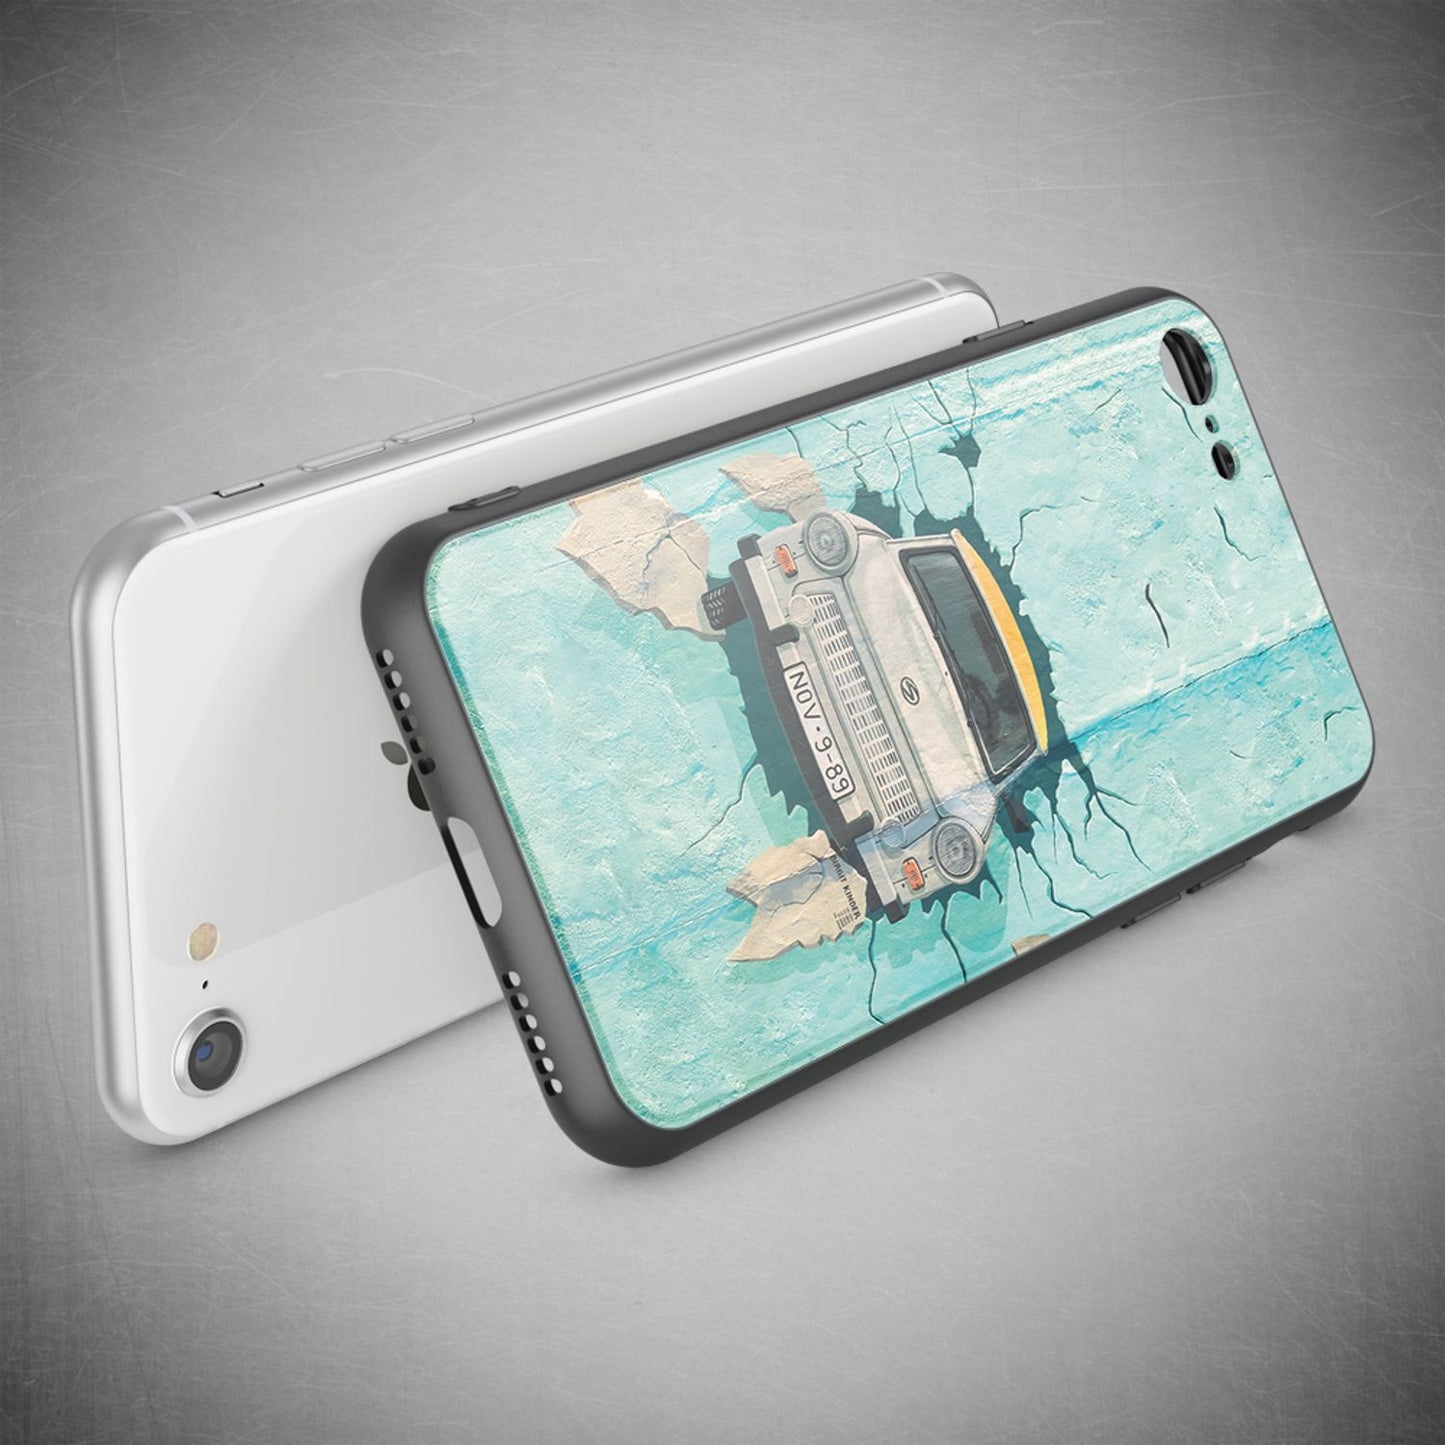 NALIA Handy Hülle für iPhone SE 2020 / 8 / 7, Glas Case Motiv Cover Schutz Etui